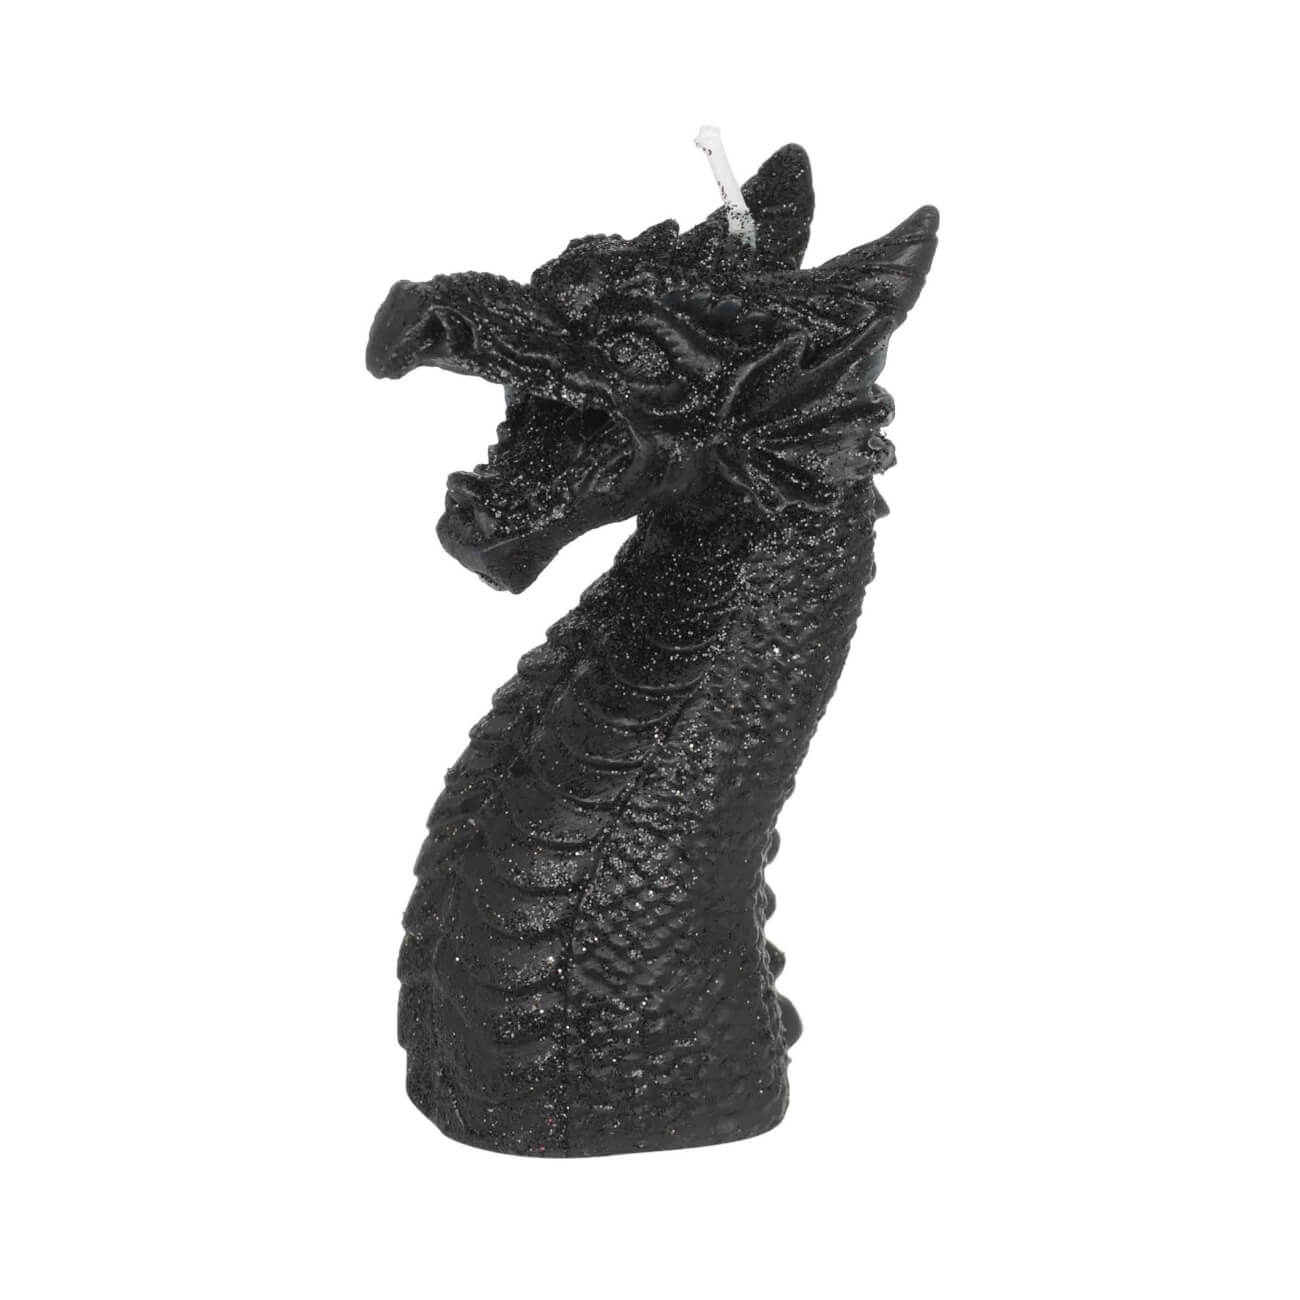 Свеча, 10 см, черная, Дракон, Dragon arrax свеча в стекле лаванда черная 9 см